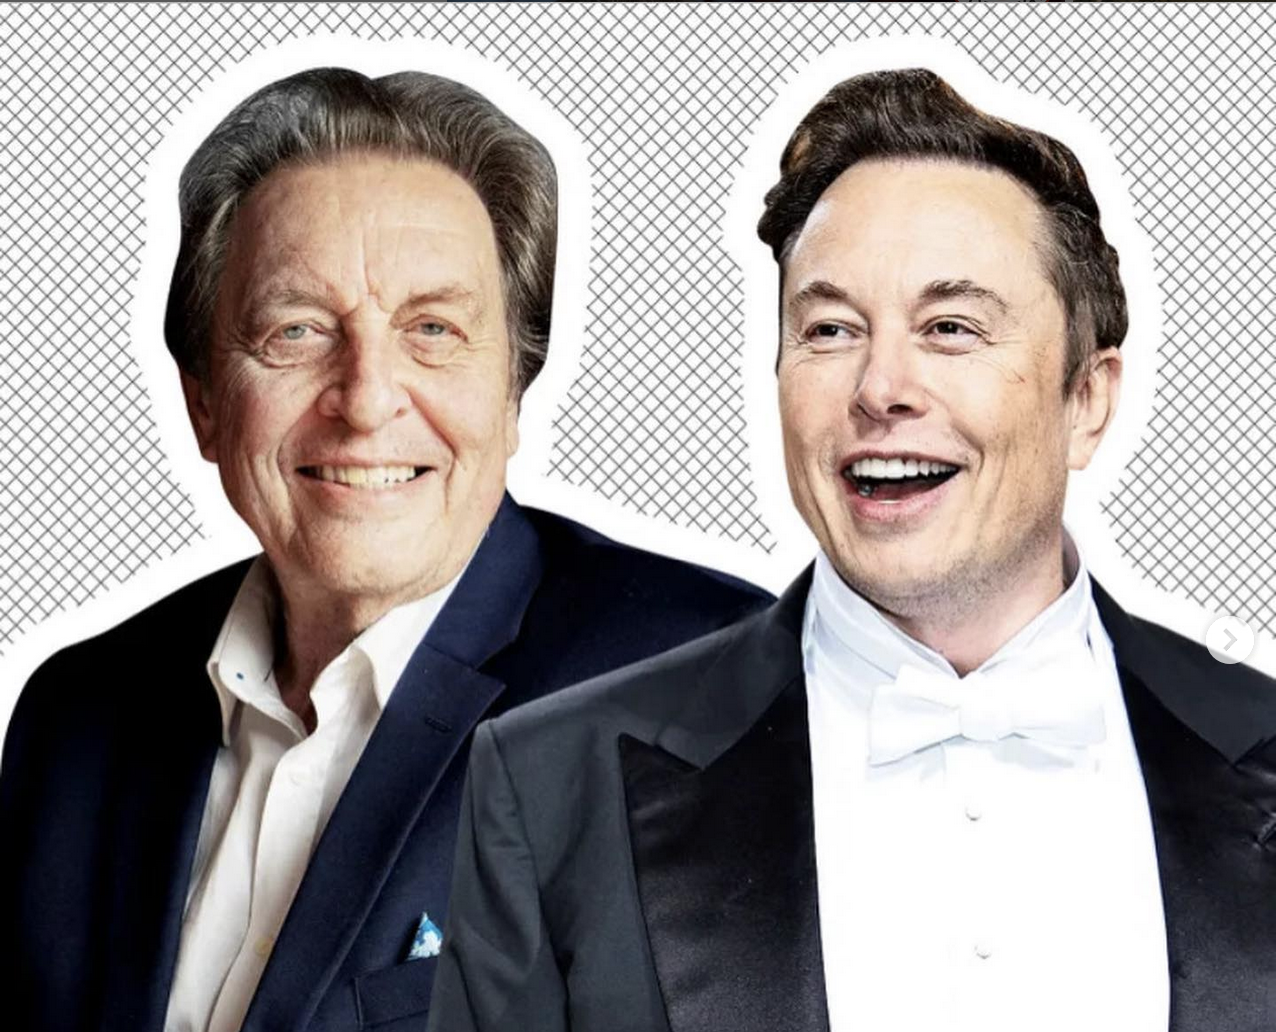 Tatăl lui Elon Musk arată adevărata față a fiului său: e un părinte jalnic, cu preferințe stranii la femei